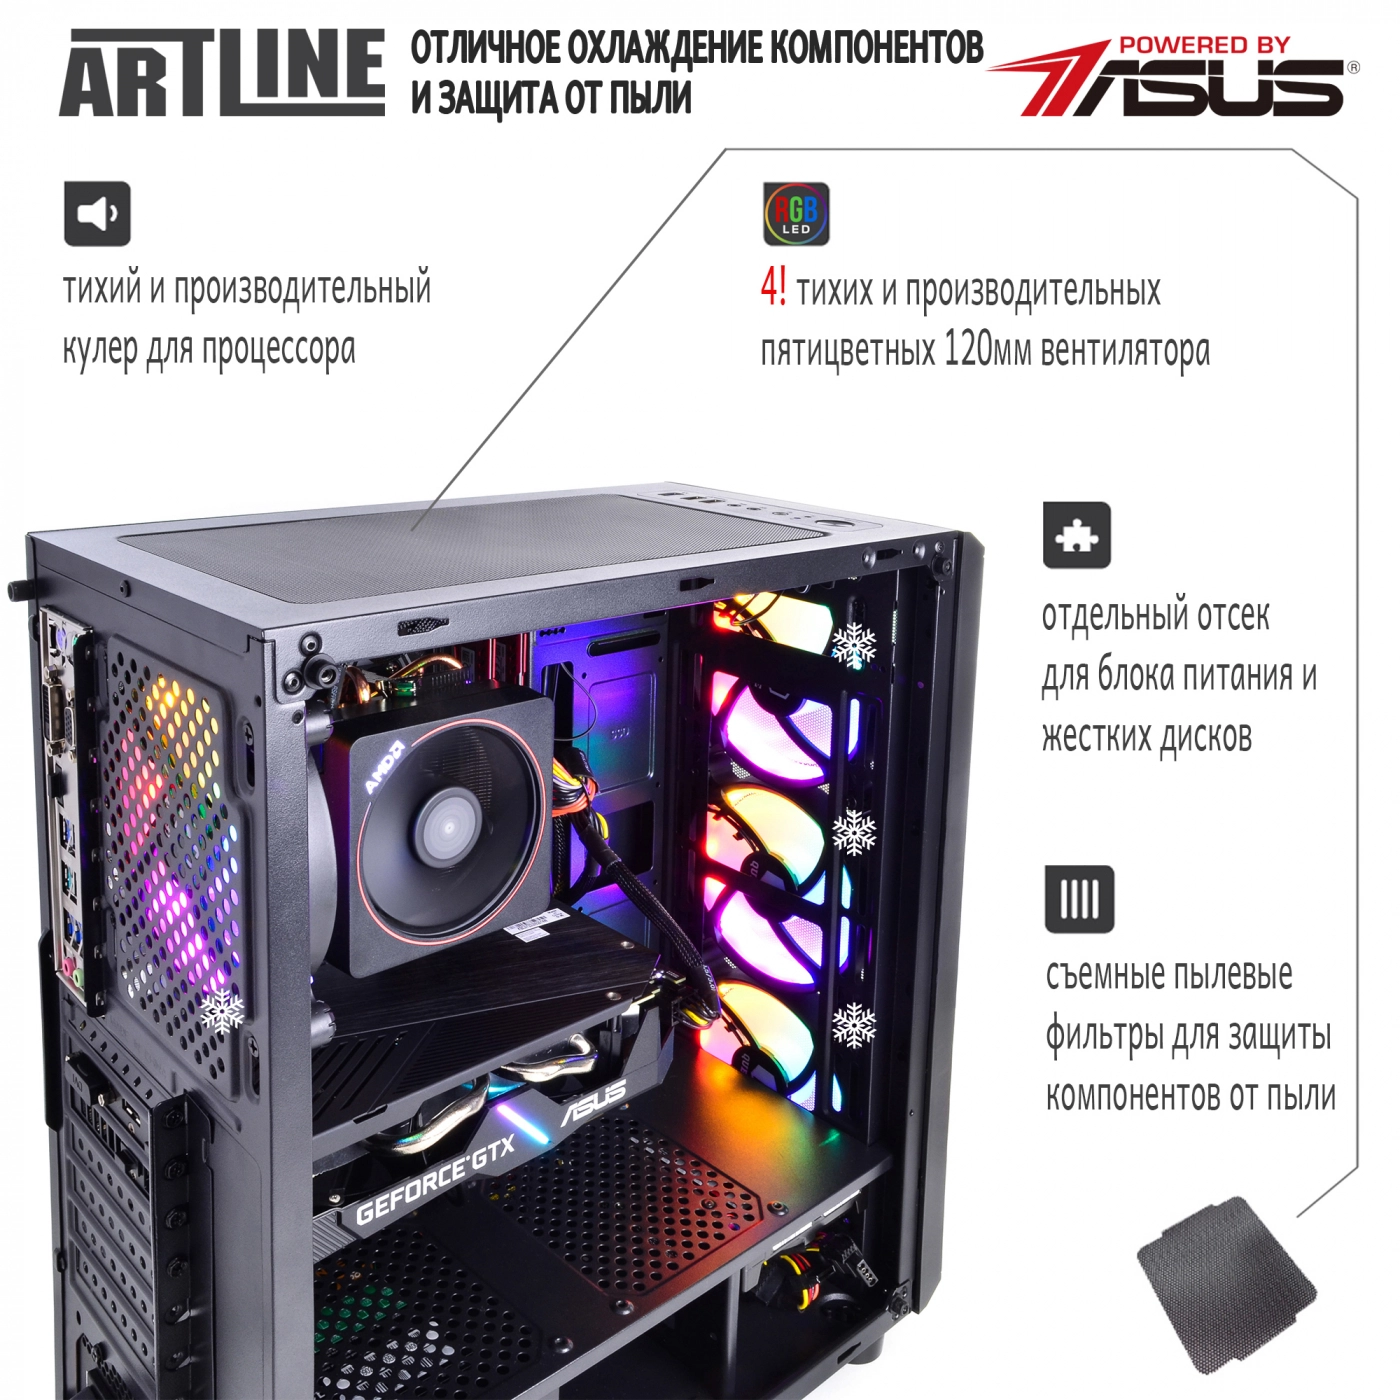 Купить Компьютер ARTLINE Gaming X47v36 - фото 3